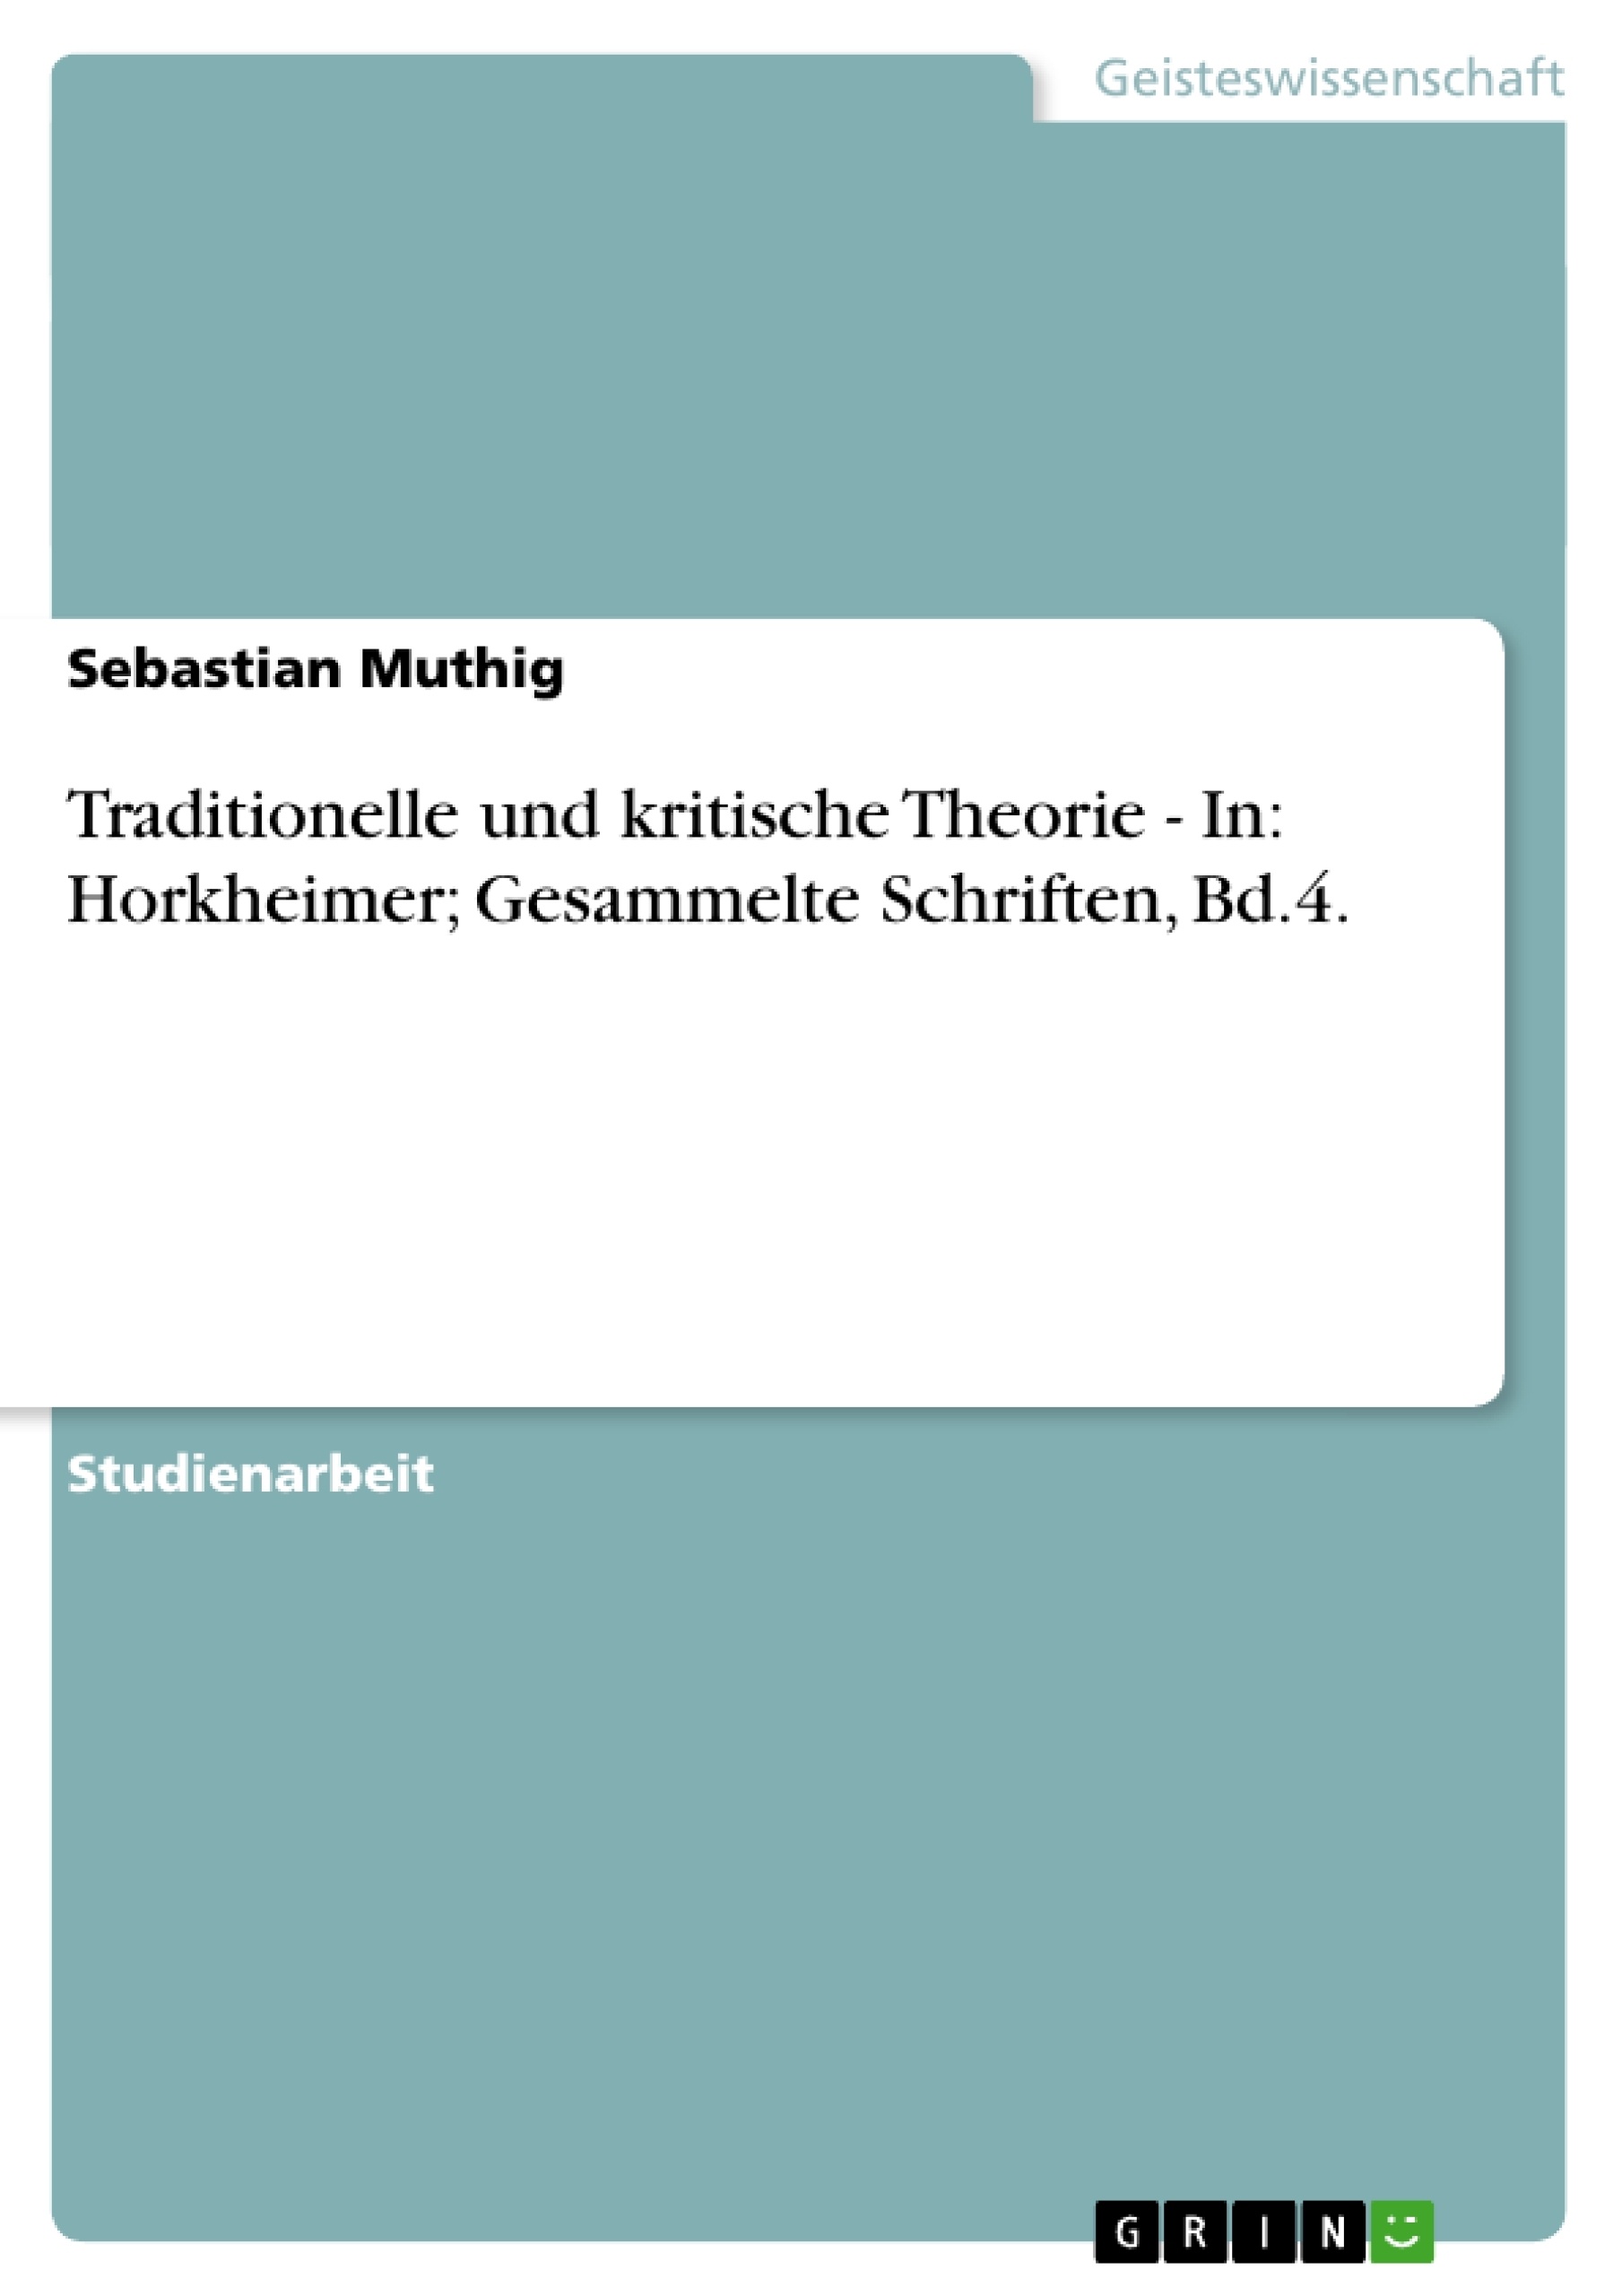 Título: Traditionelle und kritische Theorie - In: Horkheimer; Gesammelte Schriften, Bd.4.